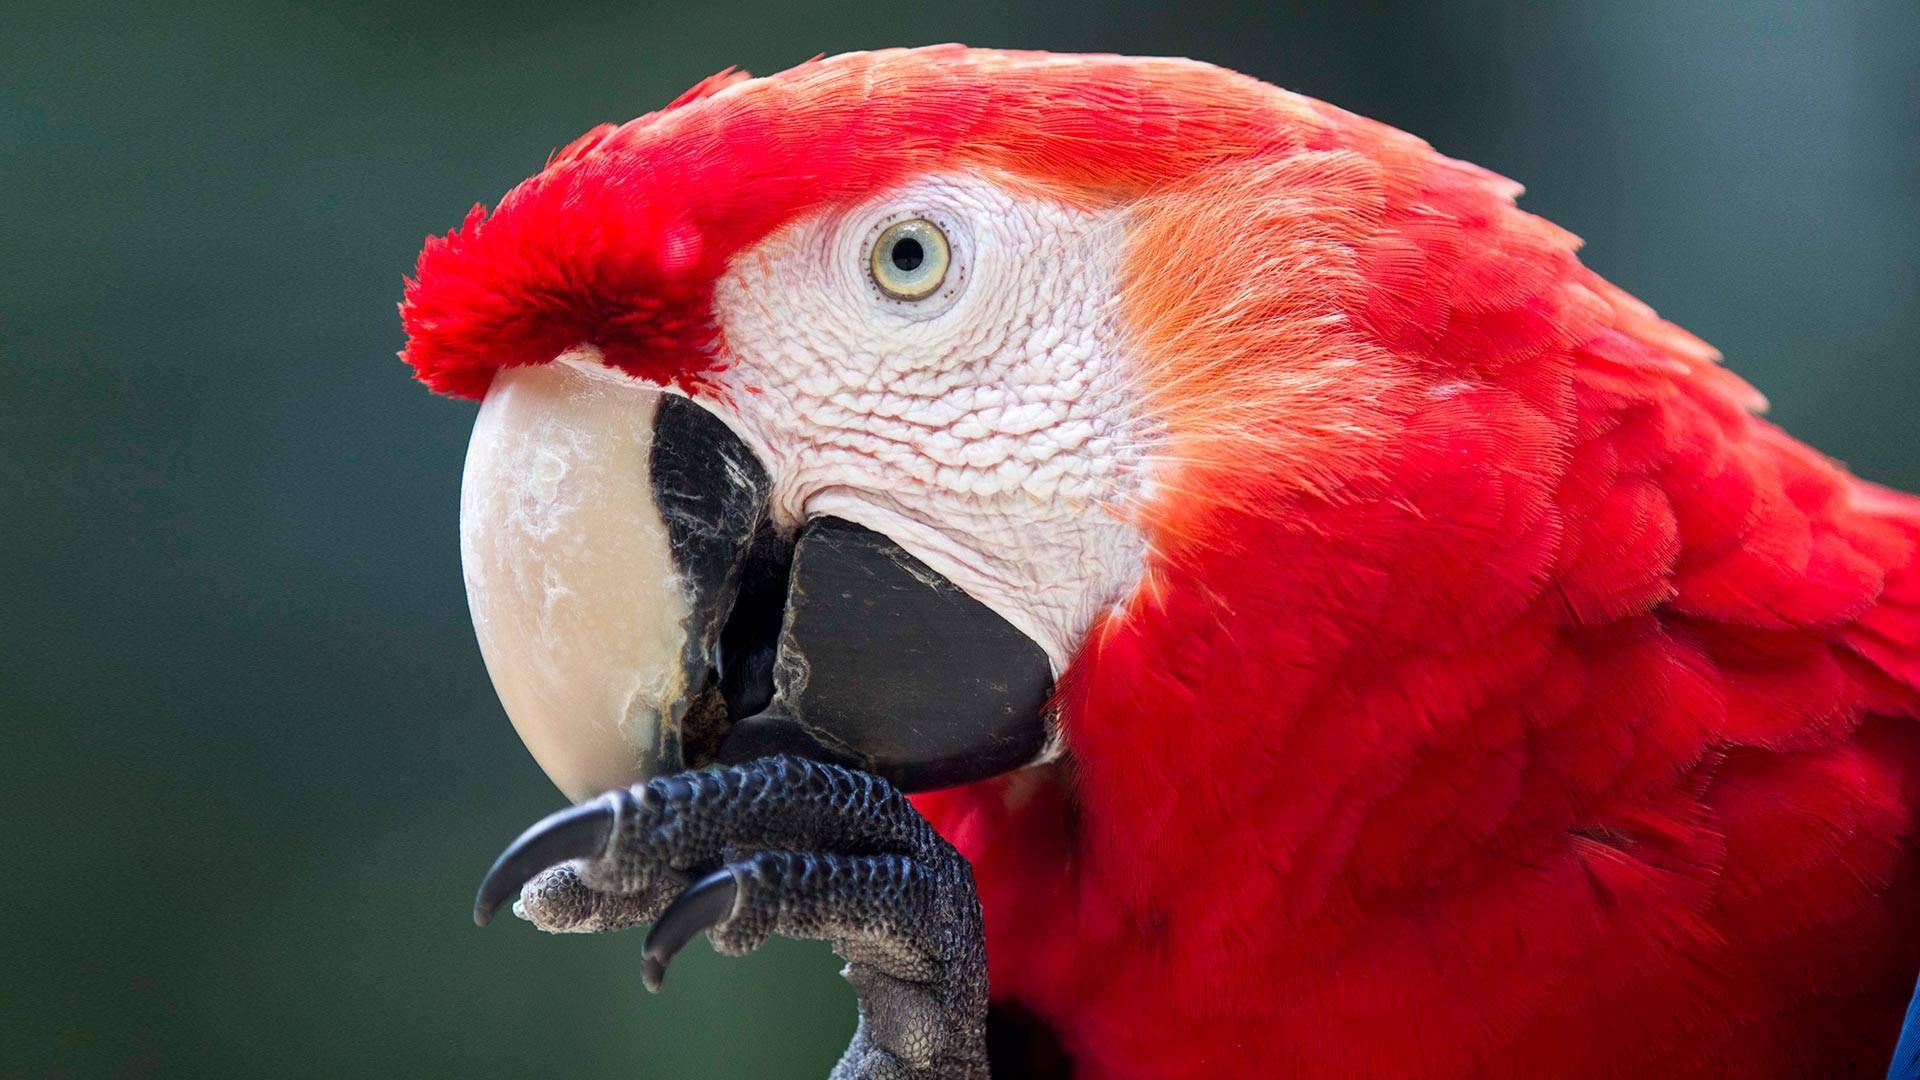 ? красный ара: описание, фото, цена, жизнь в природе и домашних условиях